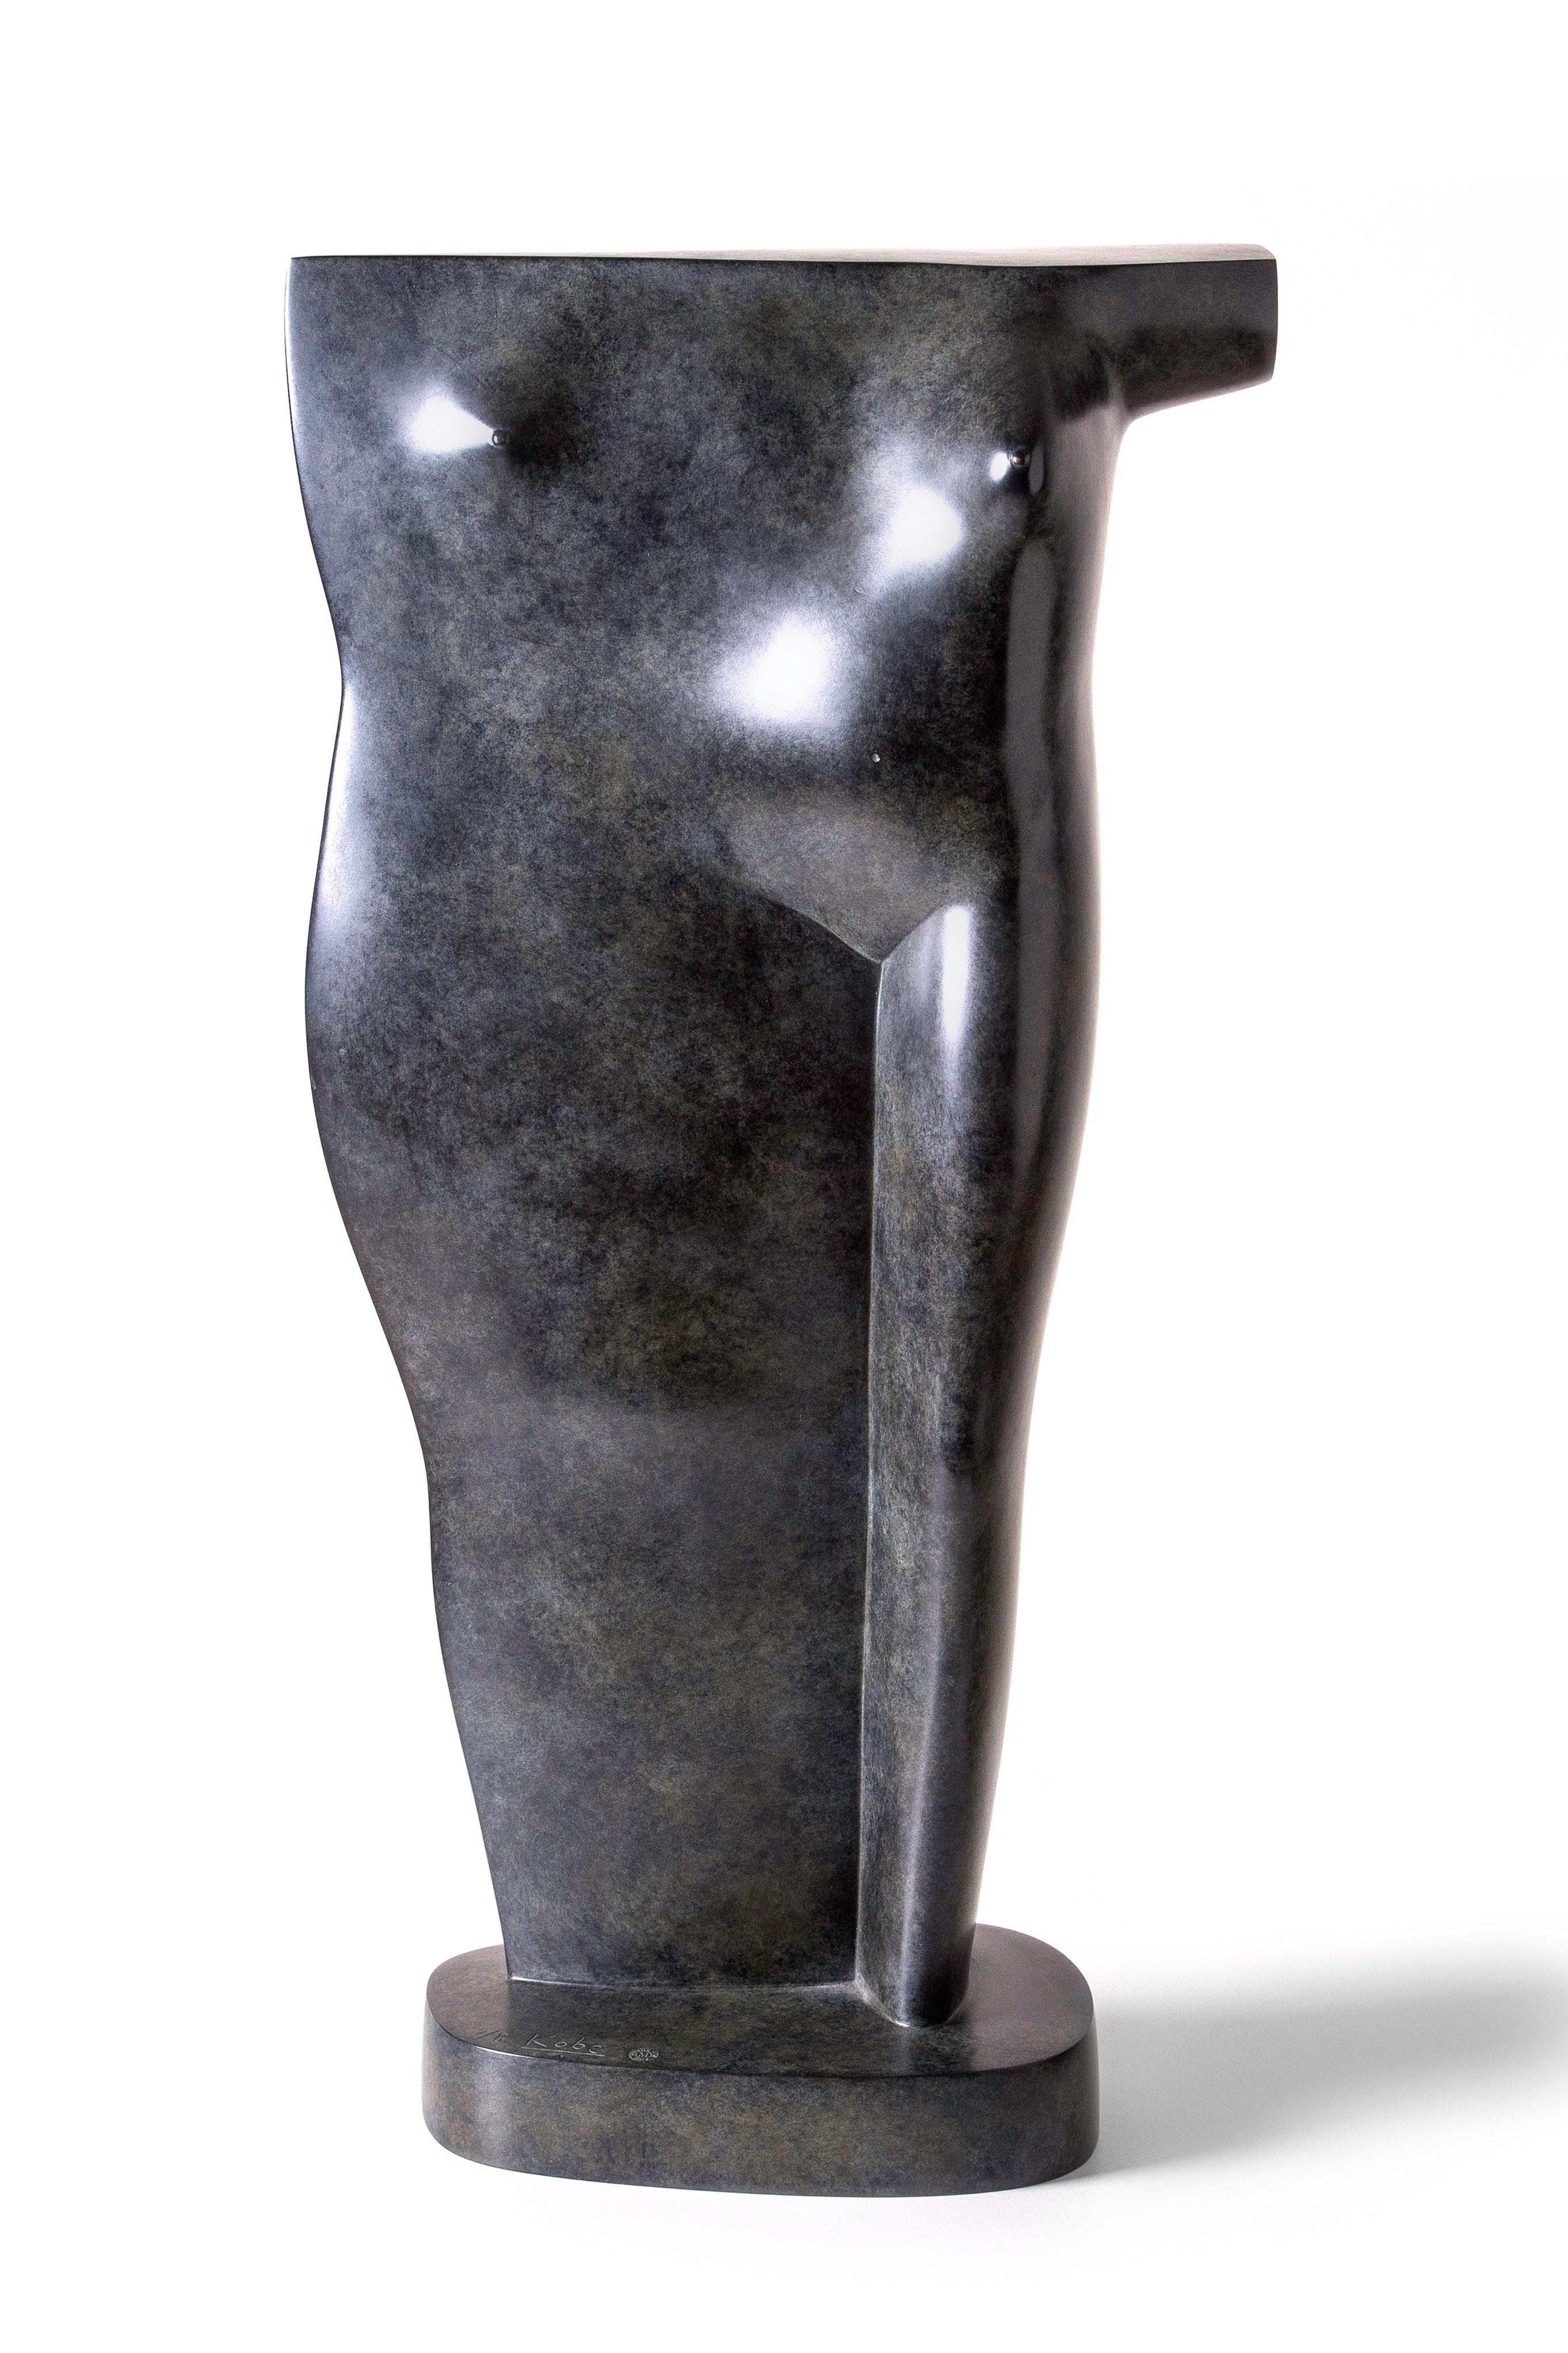 KOBE Figurative Sculpture - Torso Bronze Sculpture Contemporary Standing Figure Female Nude